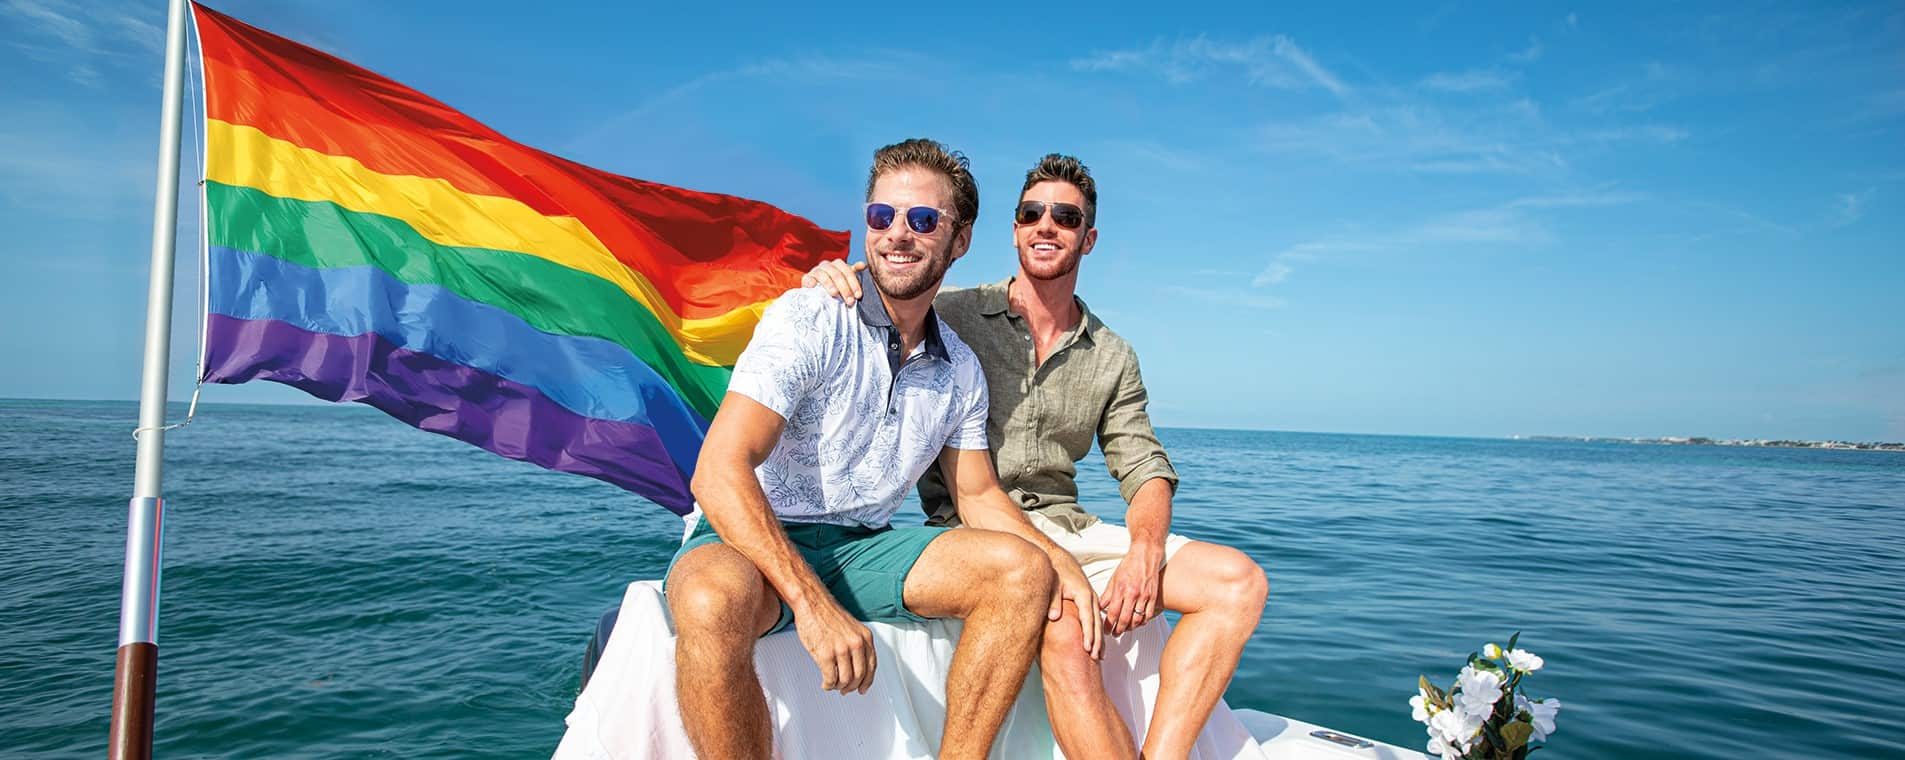 Key West gay